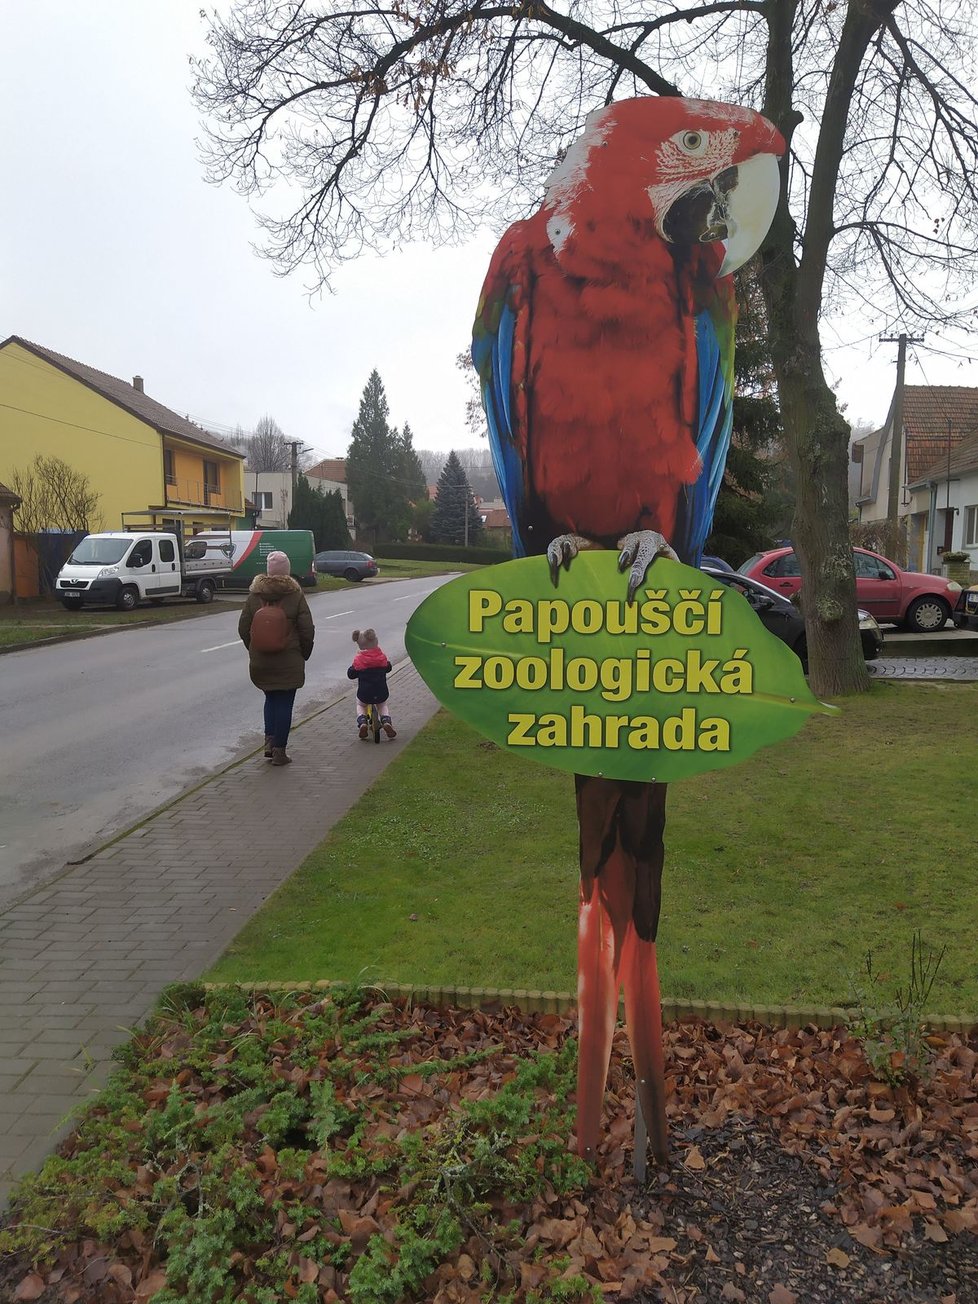 Koronavirus postihl i jedinou středoevropskou papouščí zoo v Bošovicích na Vyškovsku. Ta měla mít otevřeno až do poloviny listopadu.